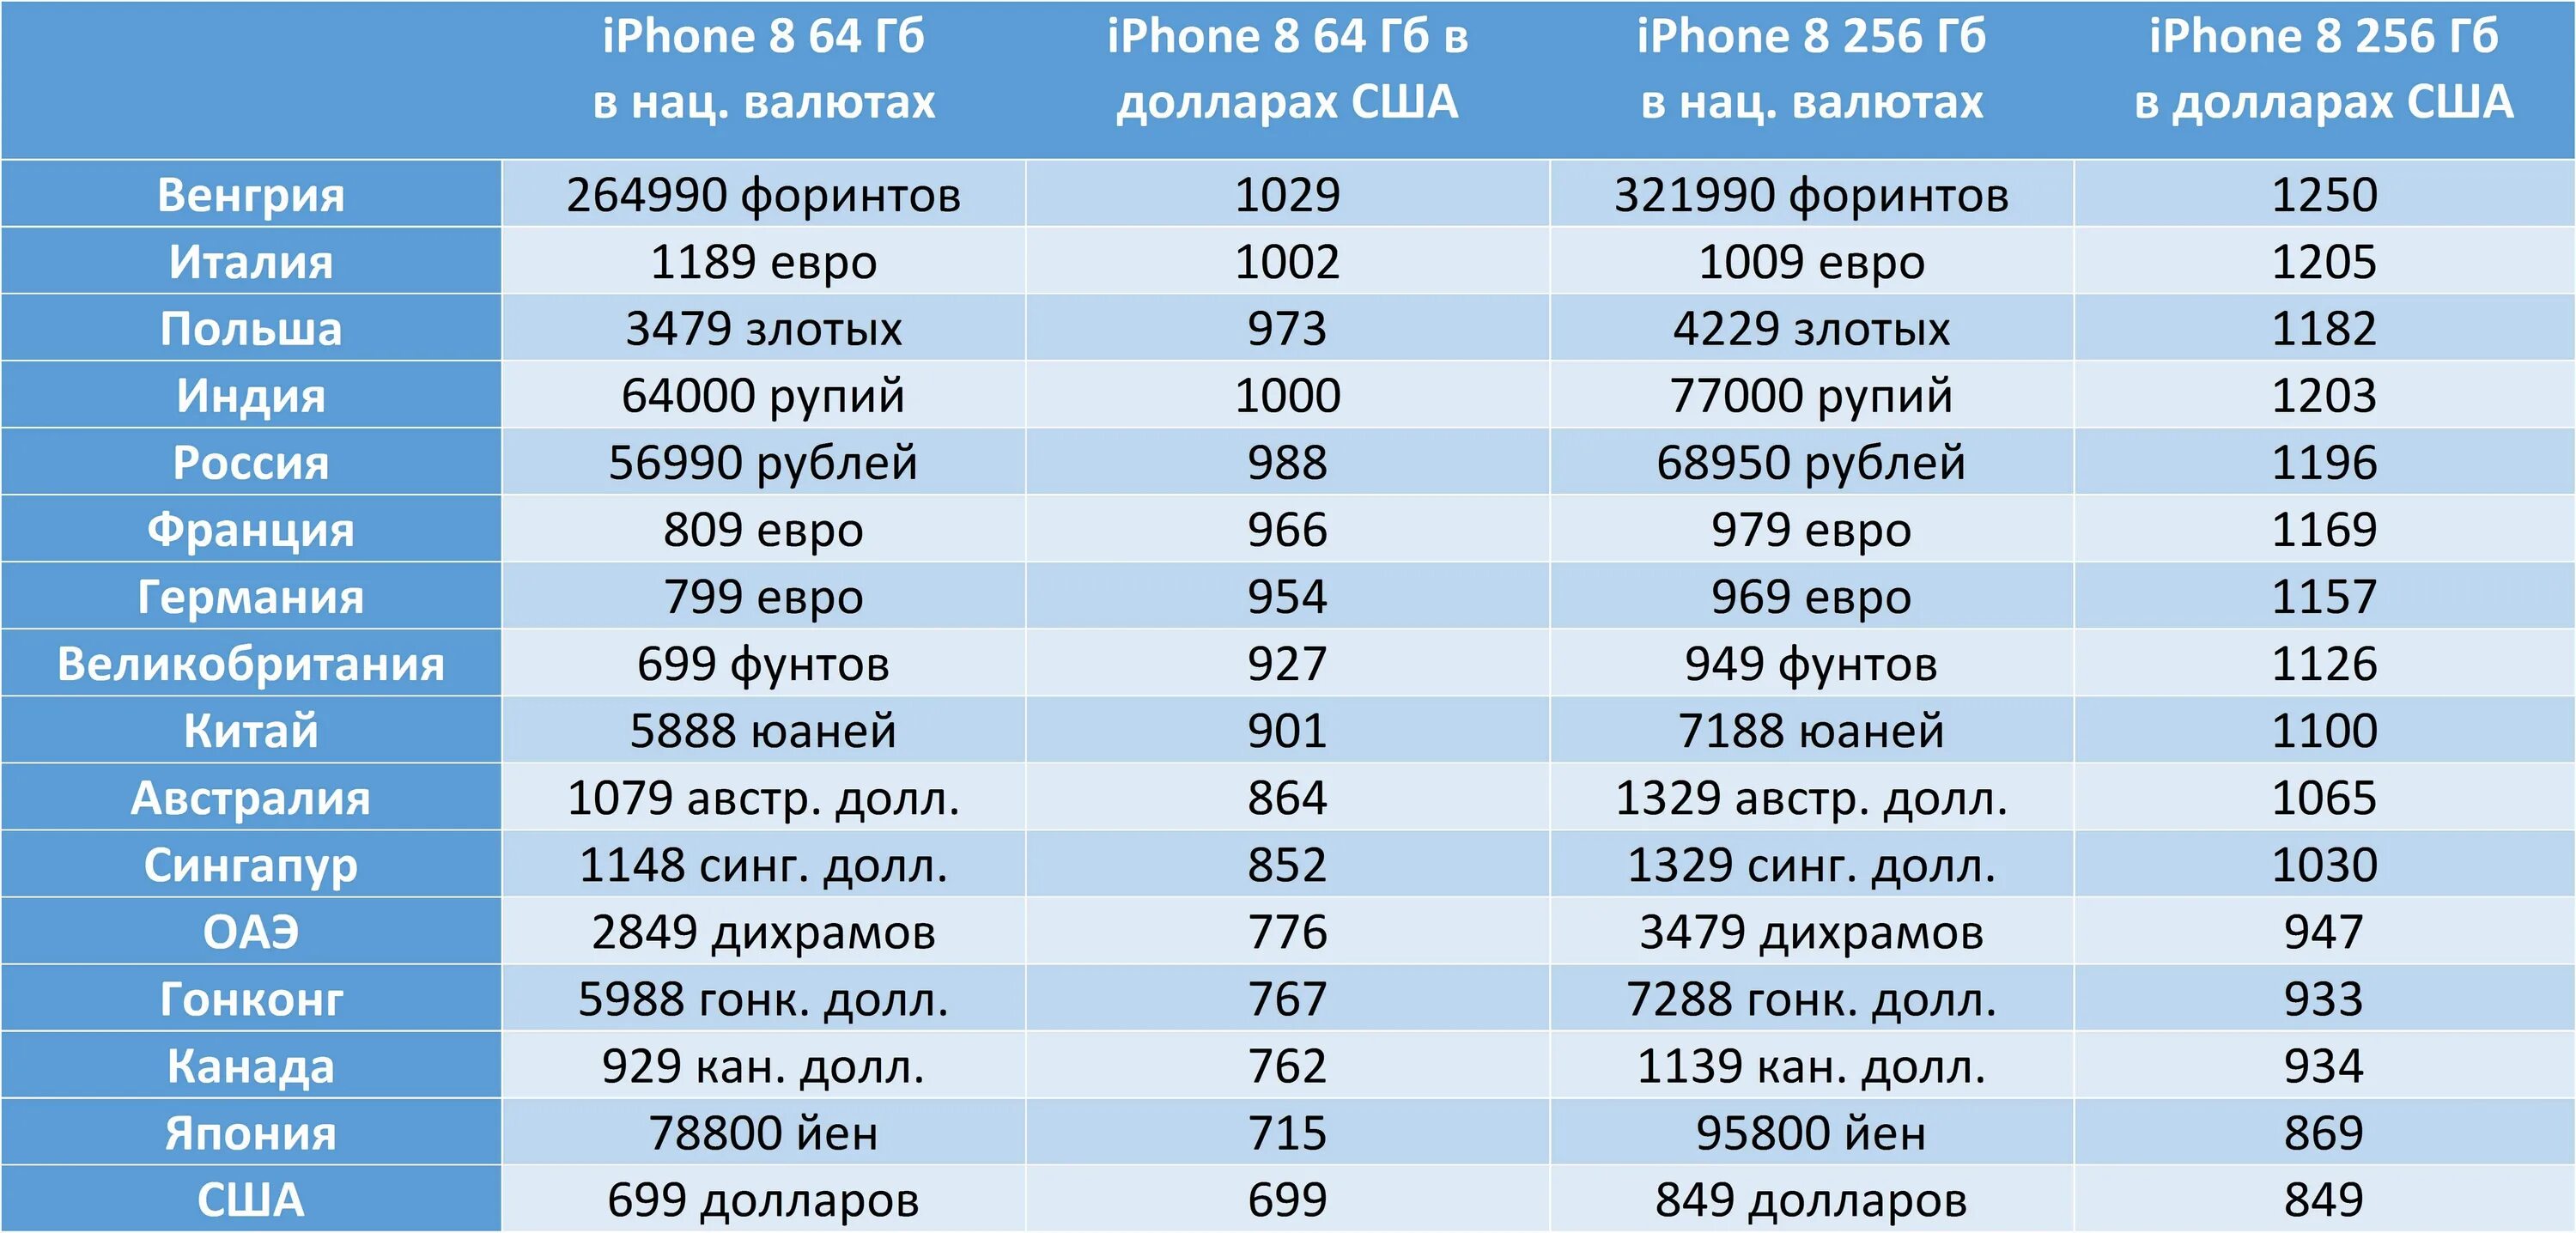 699 долларов в рублях. Количество проданных айфонов по странам. Количество айфонов в Америке. Самые дешевые айфоны по странам. В какой стране продаются самые дешевые айфоны.